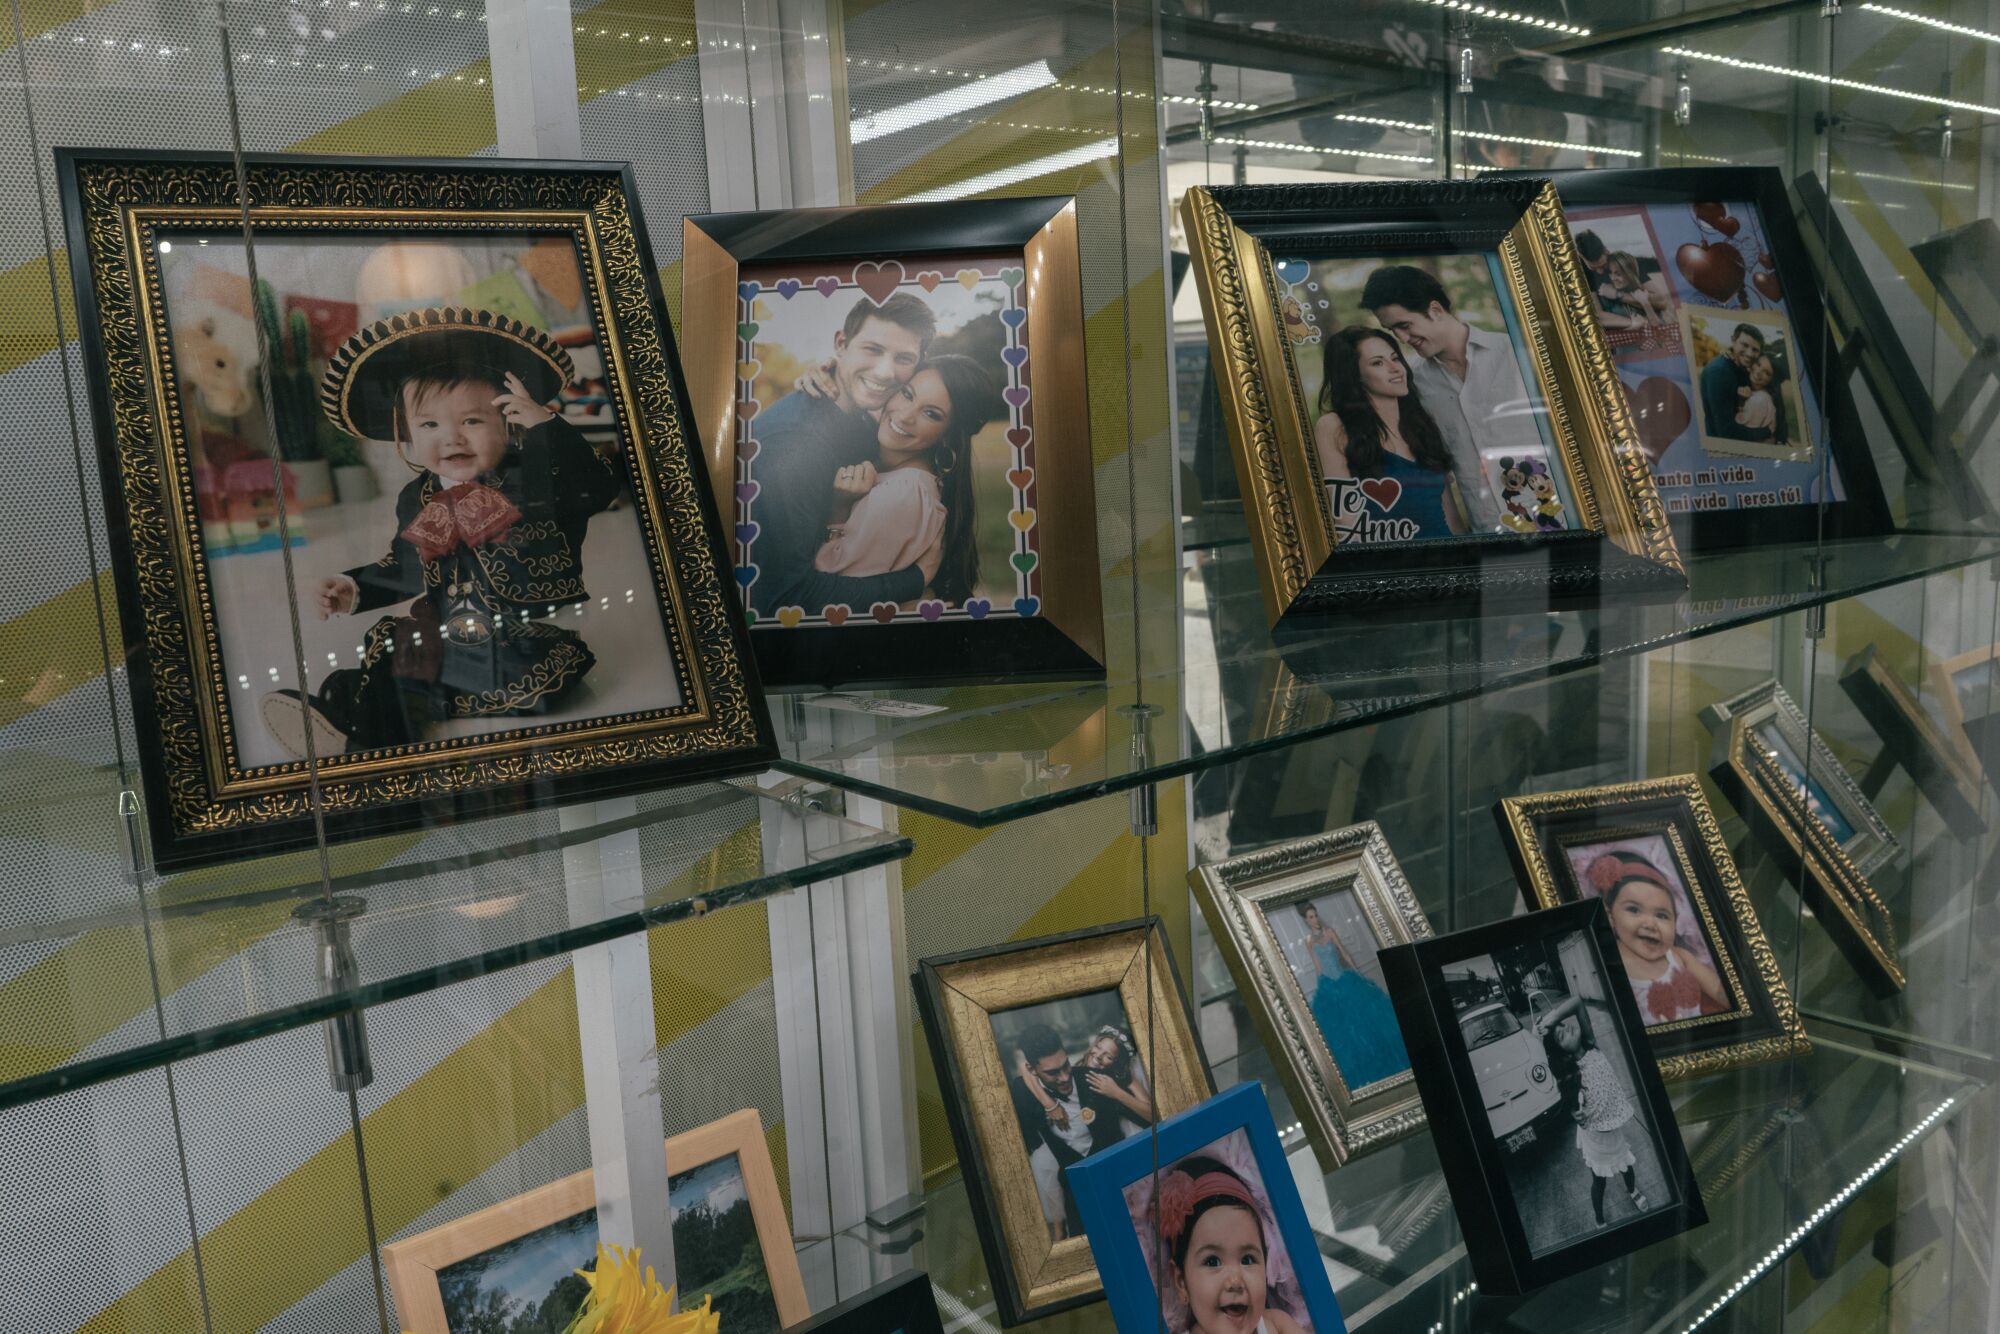 Framed photographs on glass shelves 